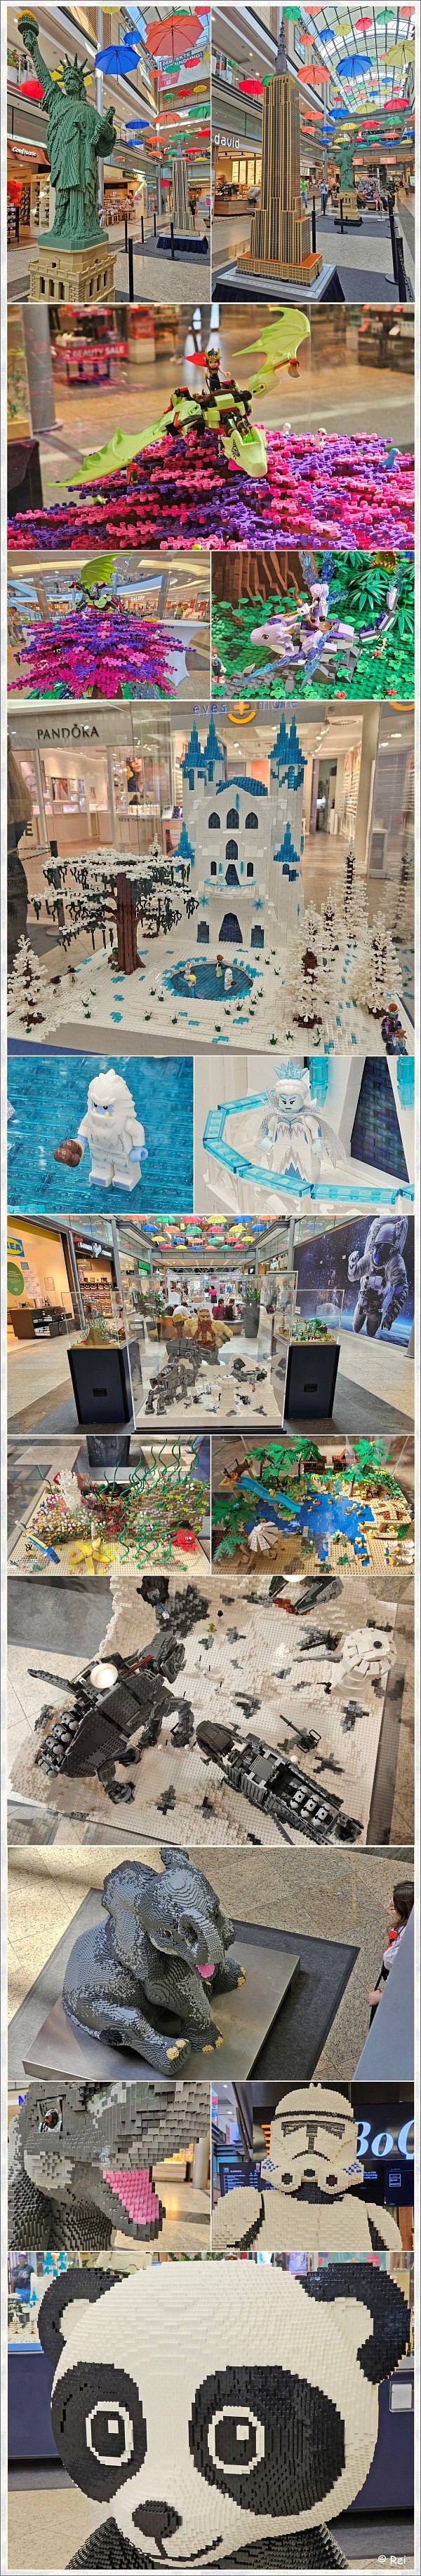 City-Galerie Wolfsburg - Lego-Ausstellung